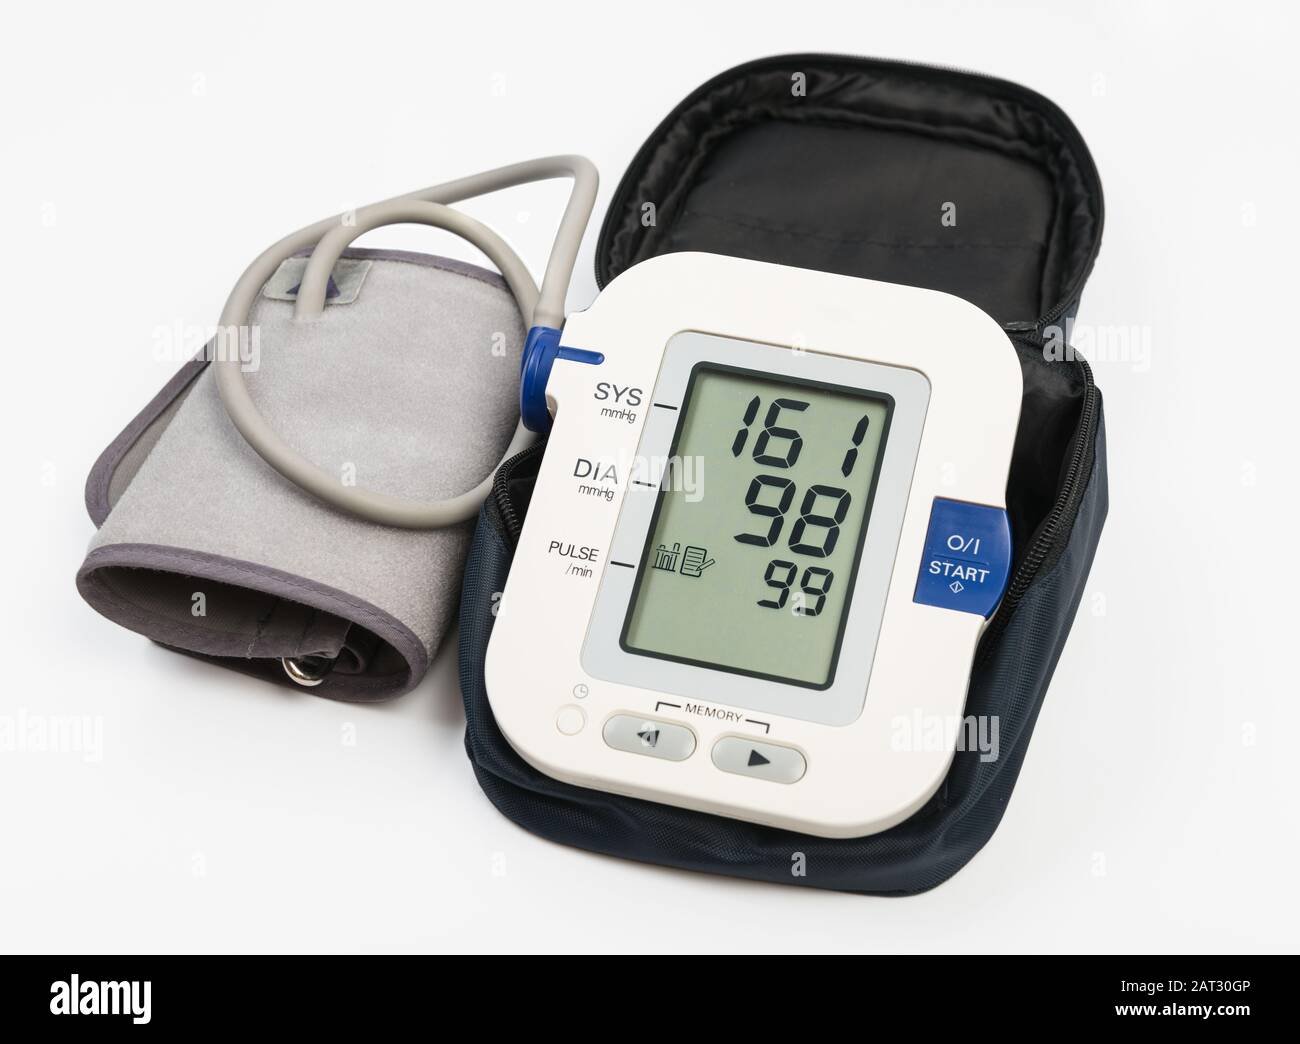 Medidor electrónico de presión sanguínea y manguito en caso de que se produzca. Pantalla del medidor que muestra la presión arterial alta 151/98. Trazado de recorte Foto de stock